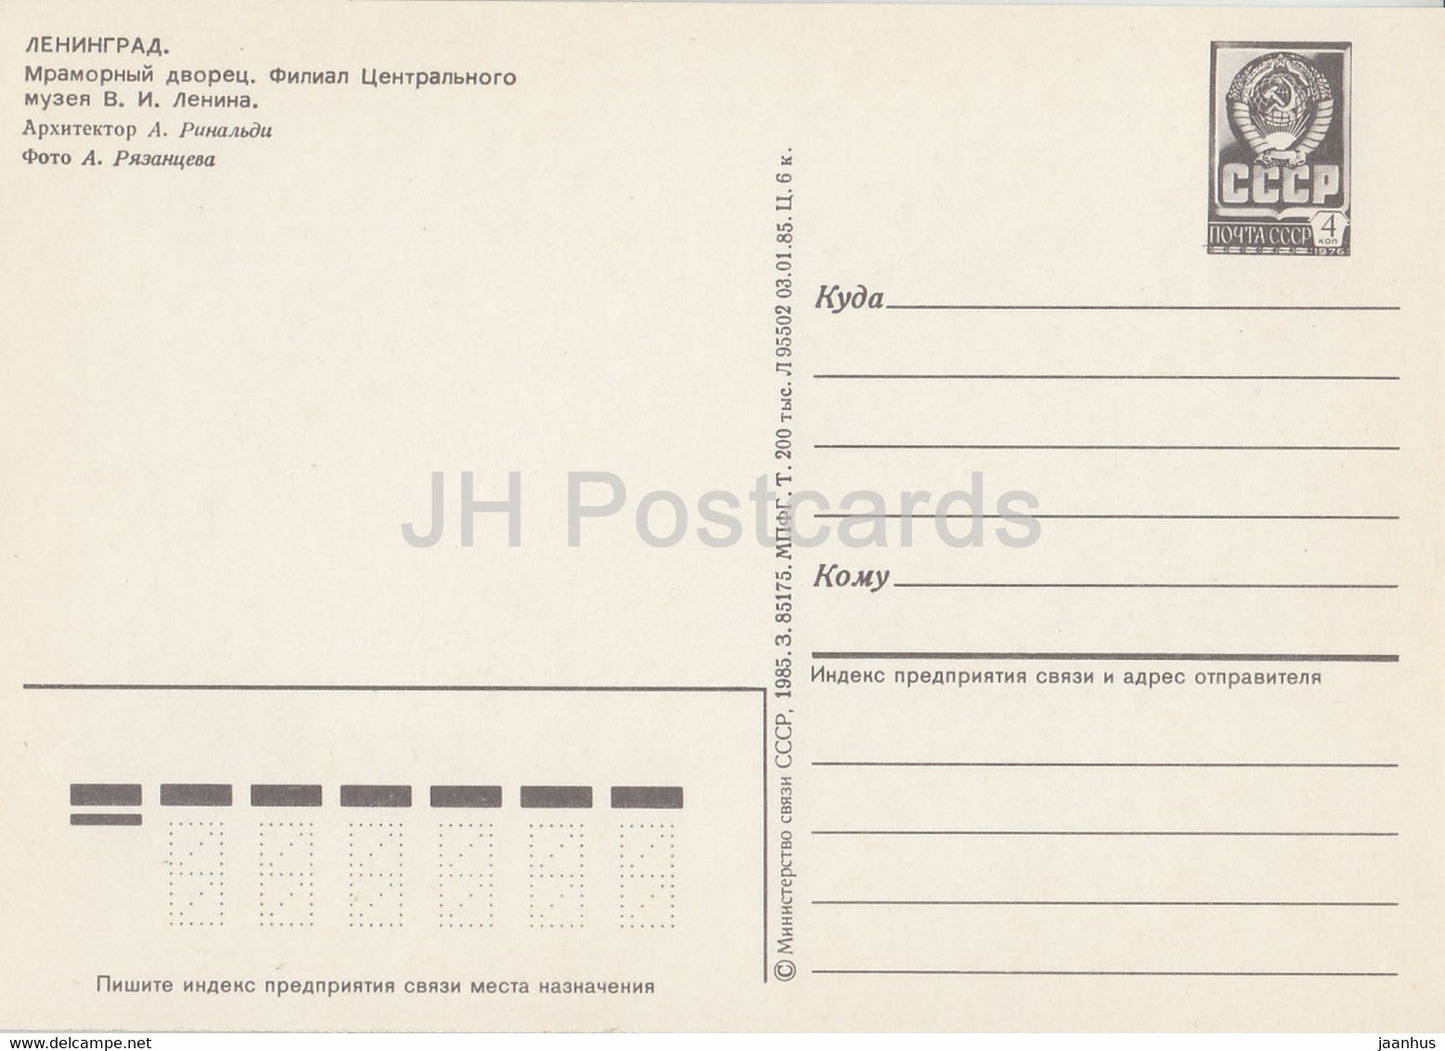 Leningrad - St Petersburg - Marble Palace - postal stationery - 1985 - Russia USSR - unused